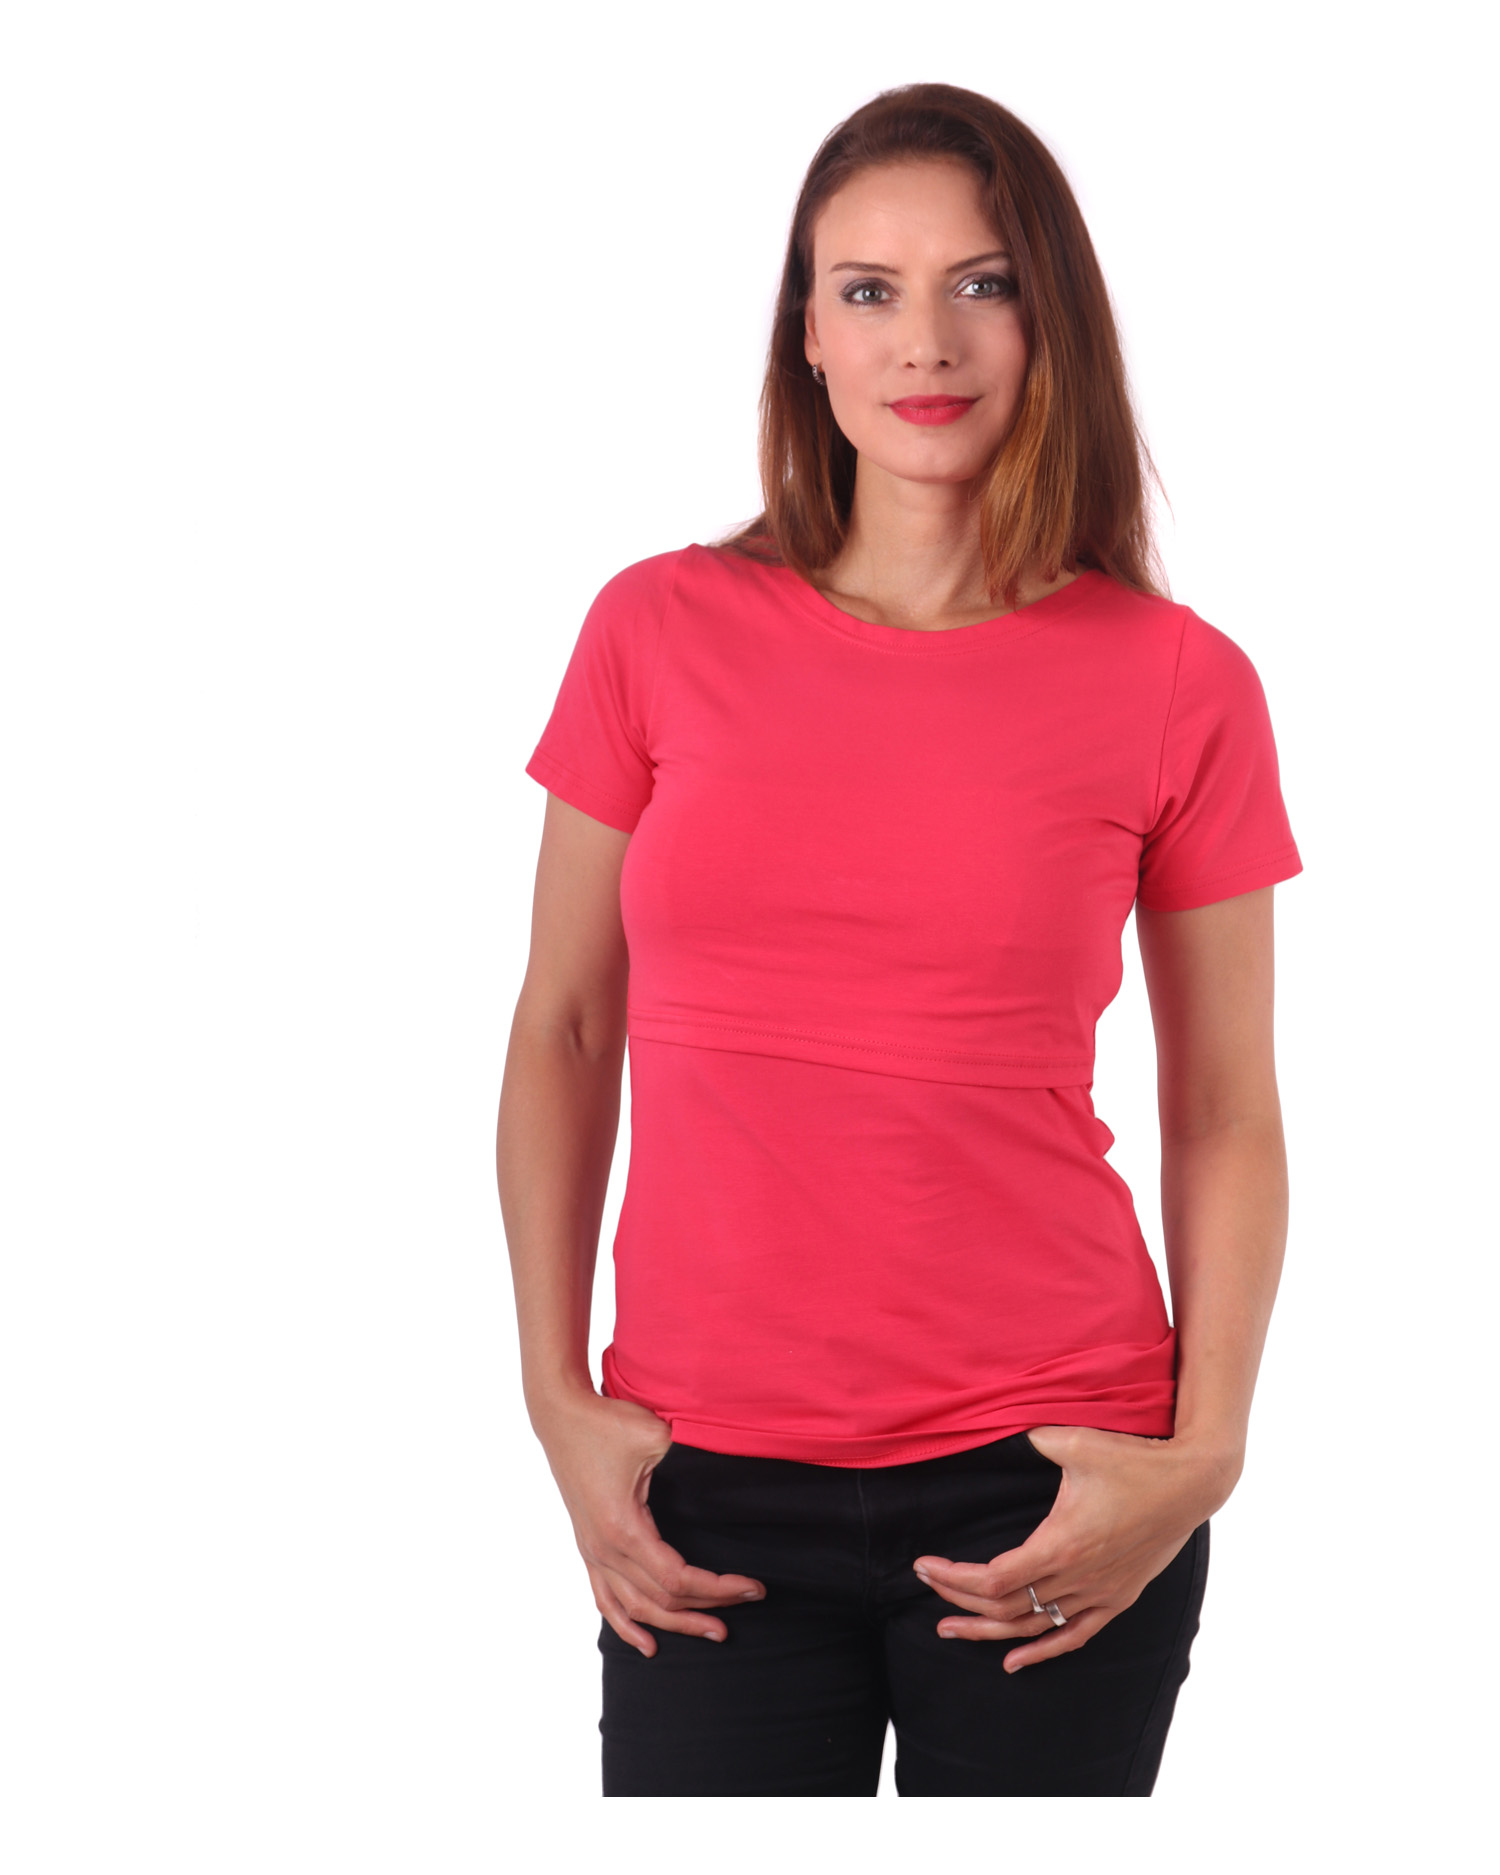 Kojicí tričko Lena, krátký rukáv, lososově růžové